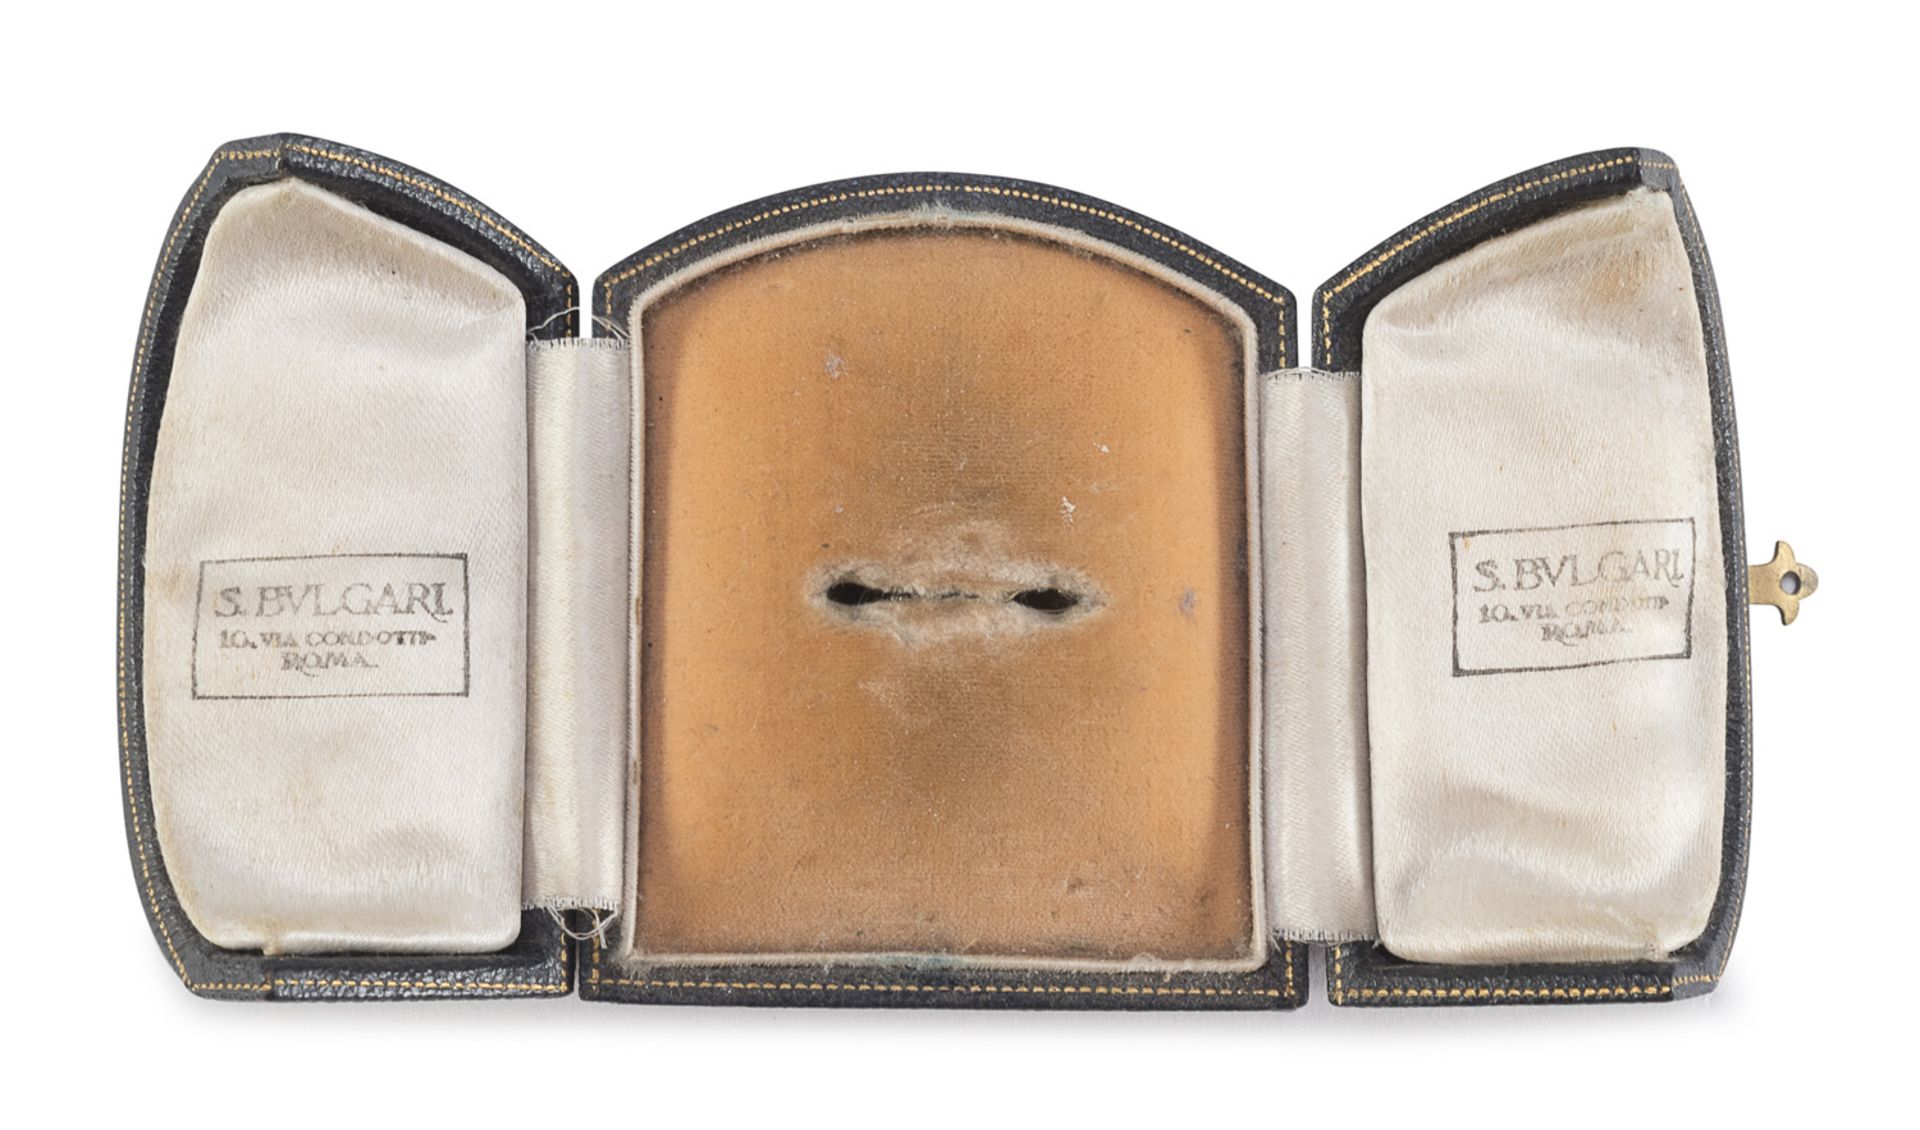 ORIGINAL BULGARI RING CASE 1930s - Image 2 of 2